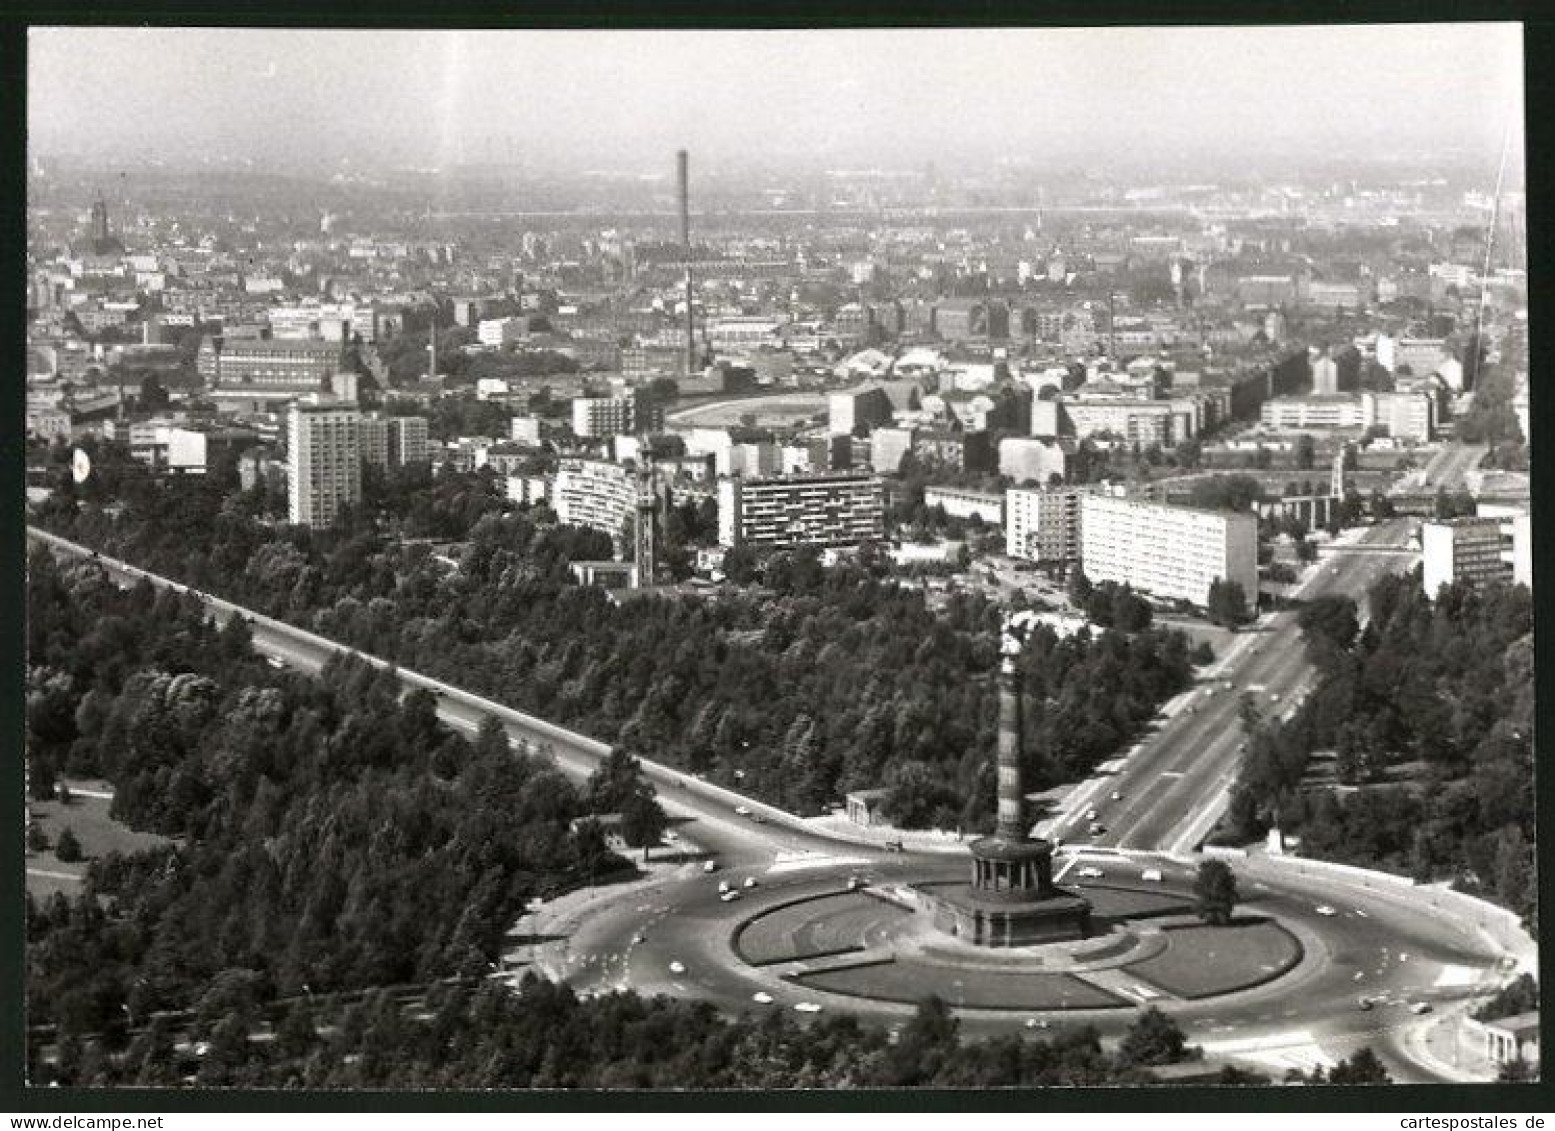 Fotografie Unbekannter Fotograf, Ansicht Berlin, Luftaufnahme Der Siegessäule & Hansa-Viertel 1964  - Plaatsen